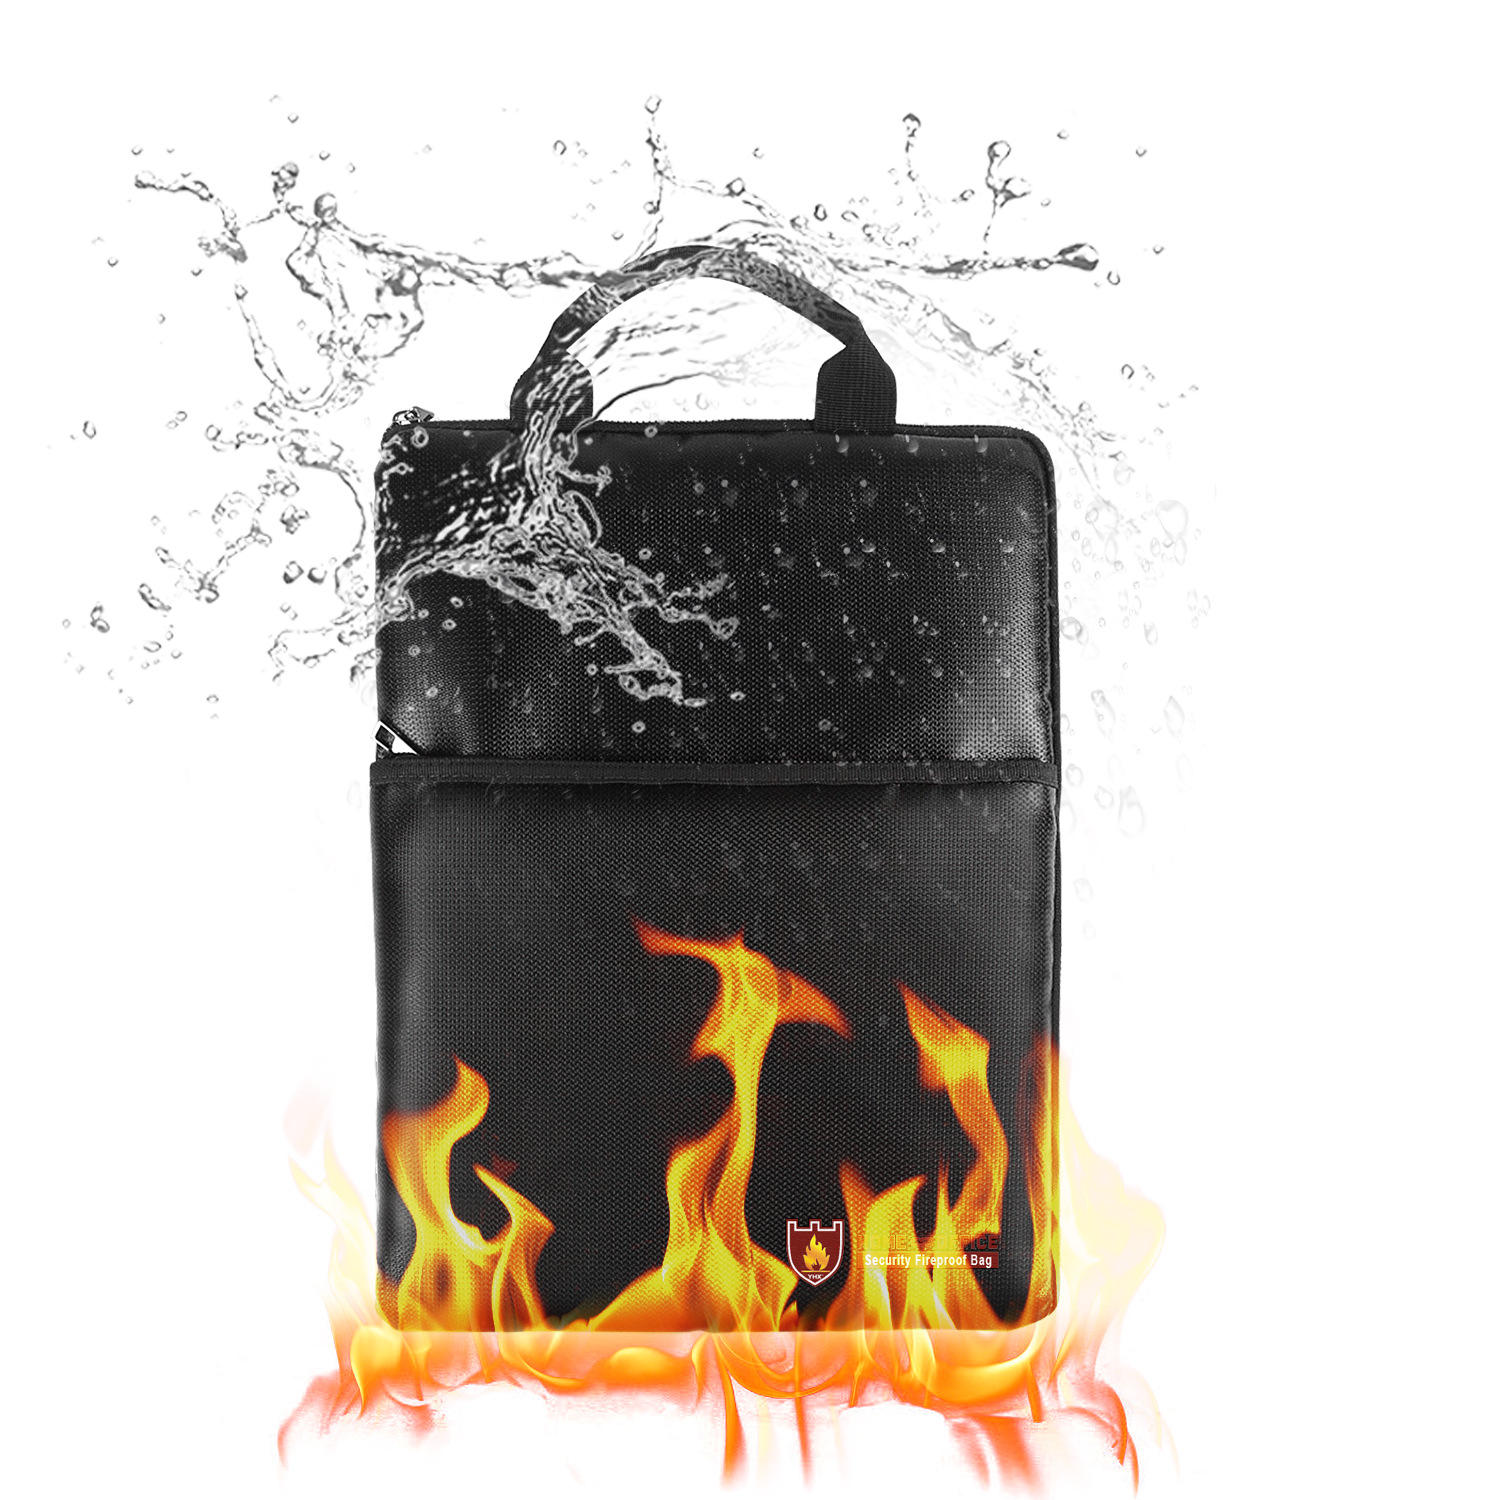 IPRee® Fireproof وثيقة حقيبة يد آمنة ضد للماء الأعمال حقيبة الملفات مجلد حامل التخزين للحصول على بطاقات البنك النقدية النقدية